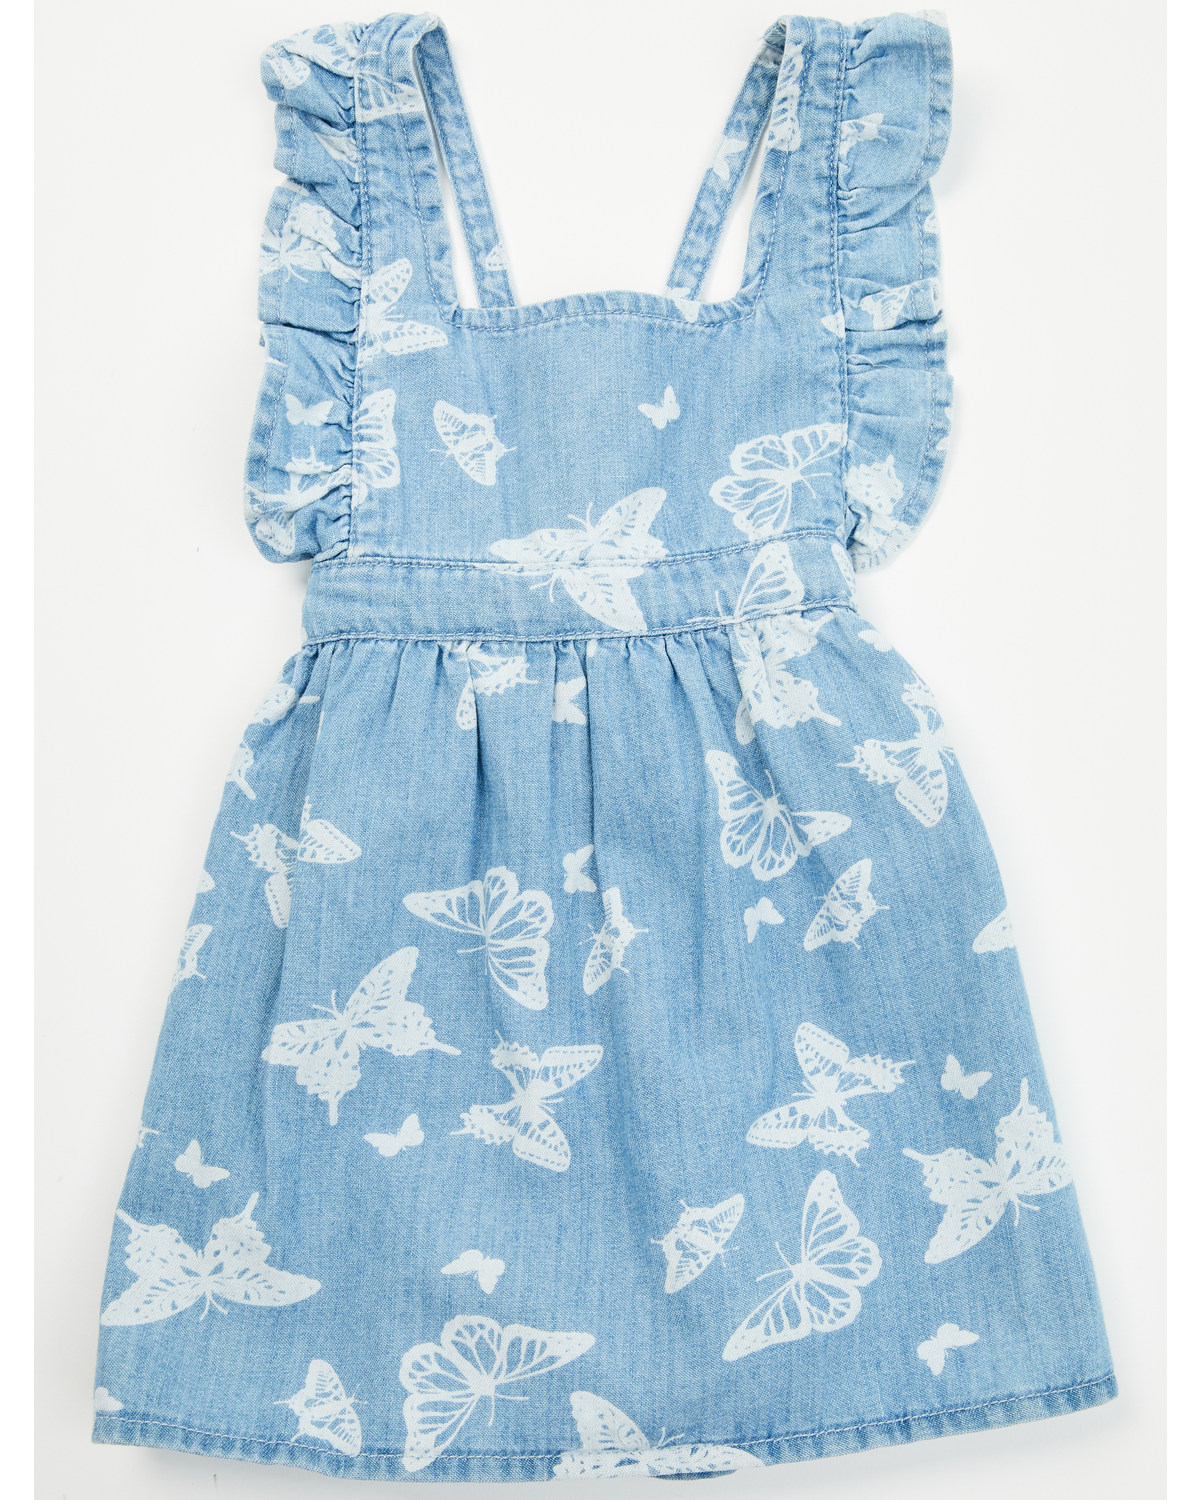 Wrangler Toddler Girls' Butterfly Print Denim Dress